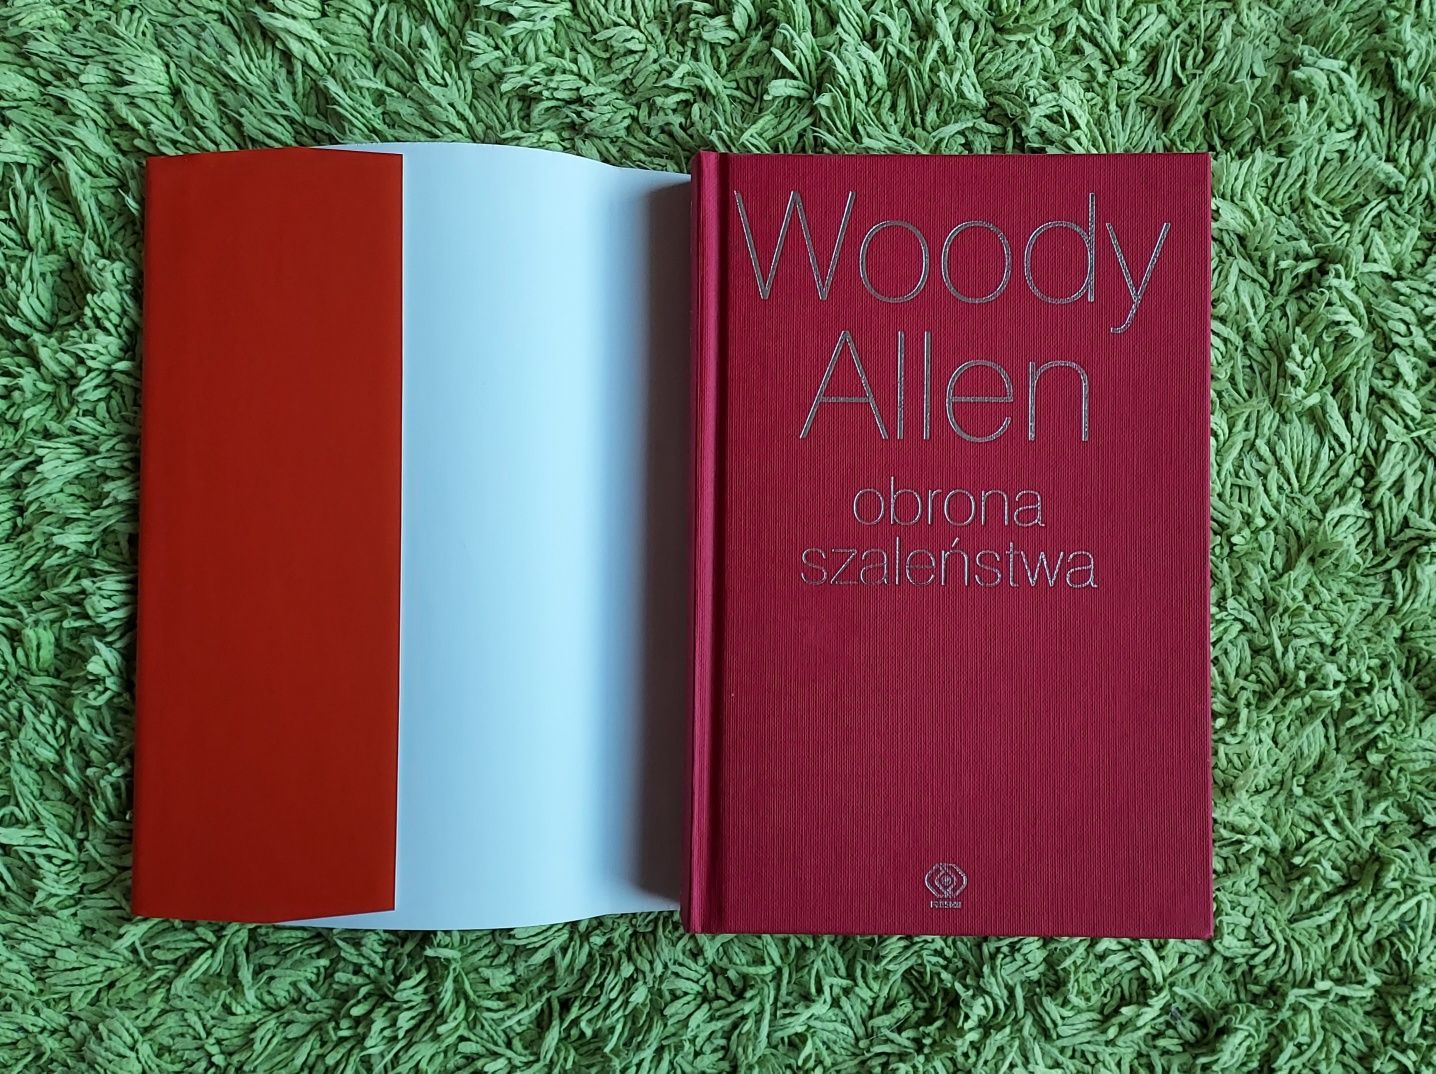 Obrona szaleństwa Woody Allen - NOWA!